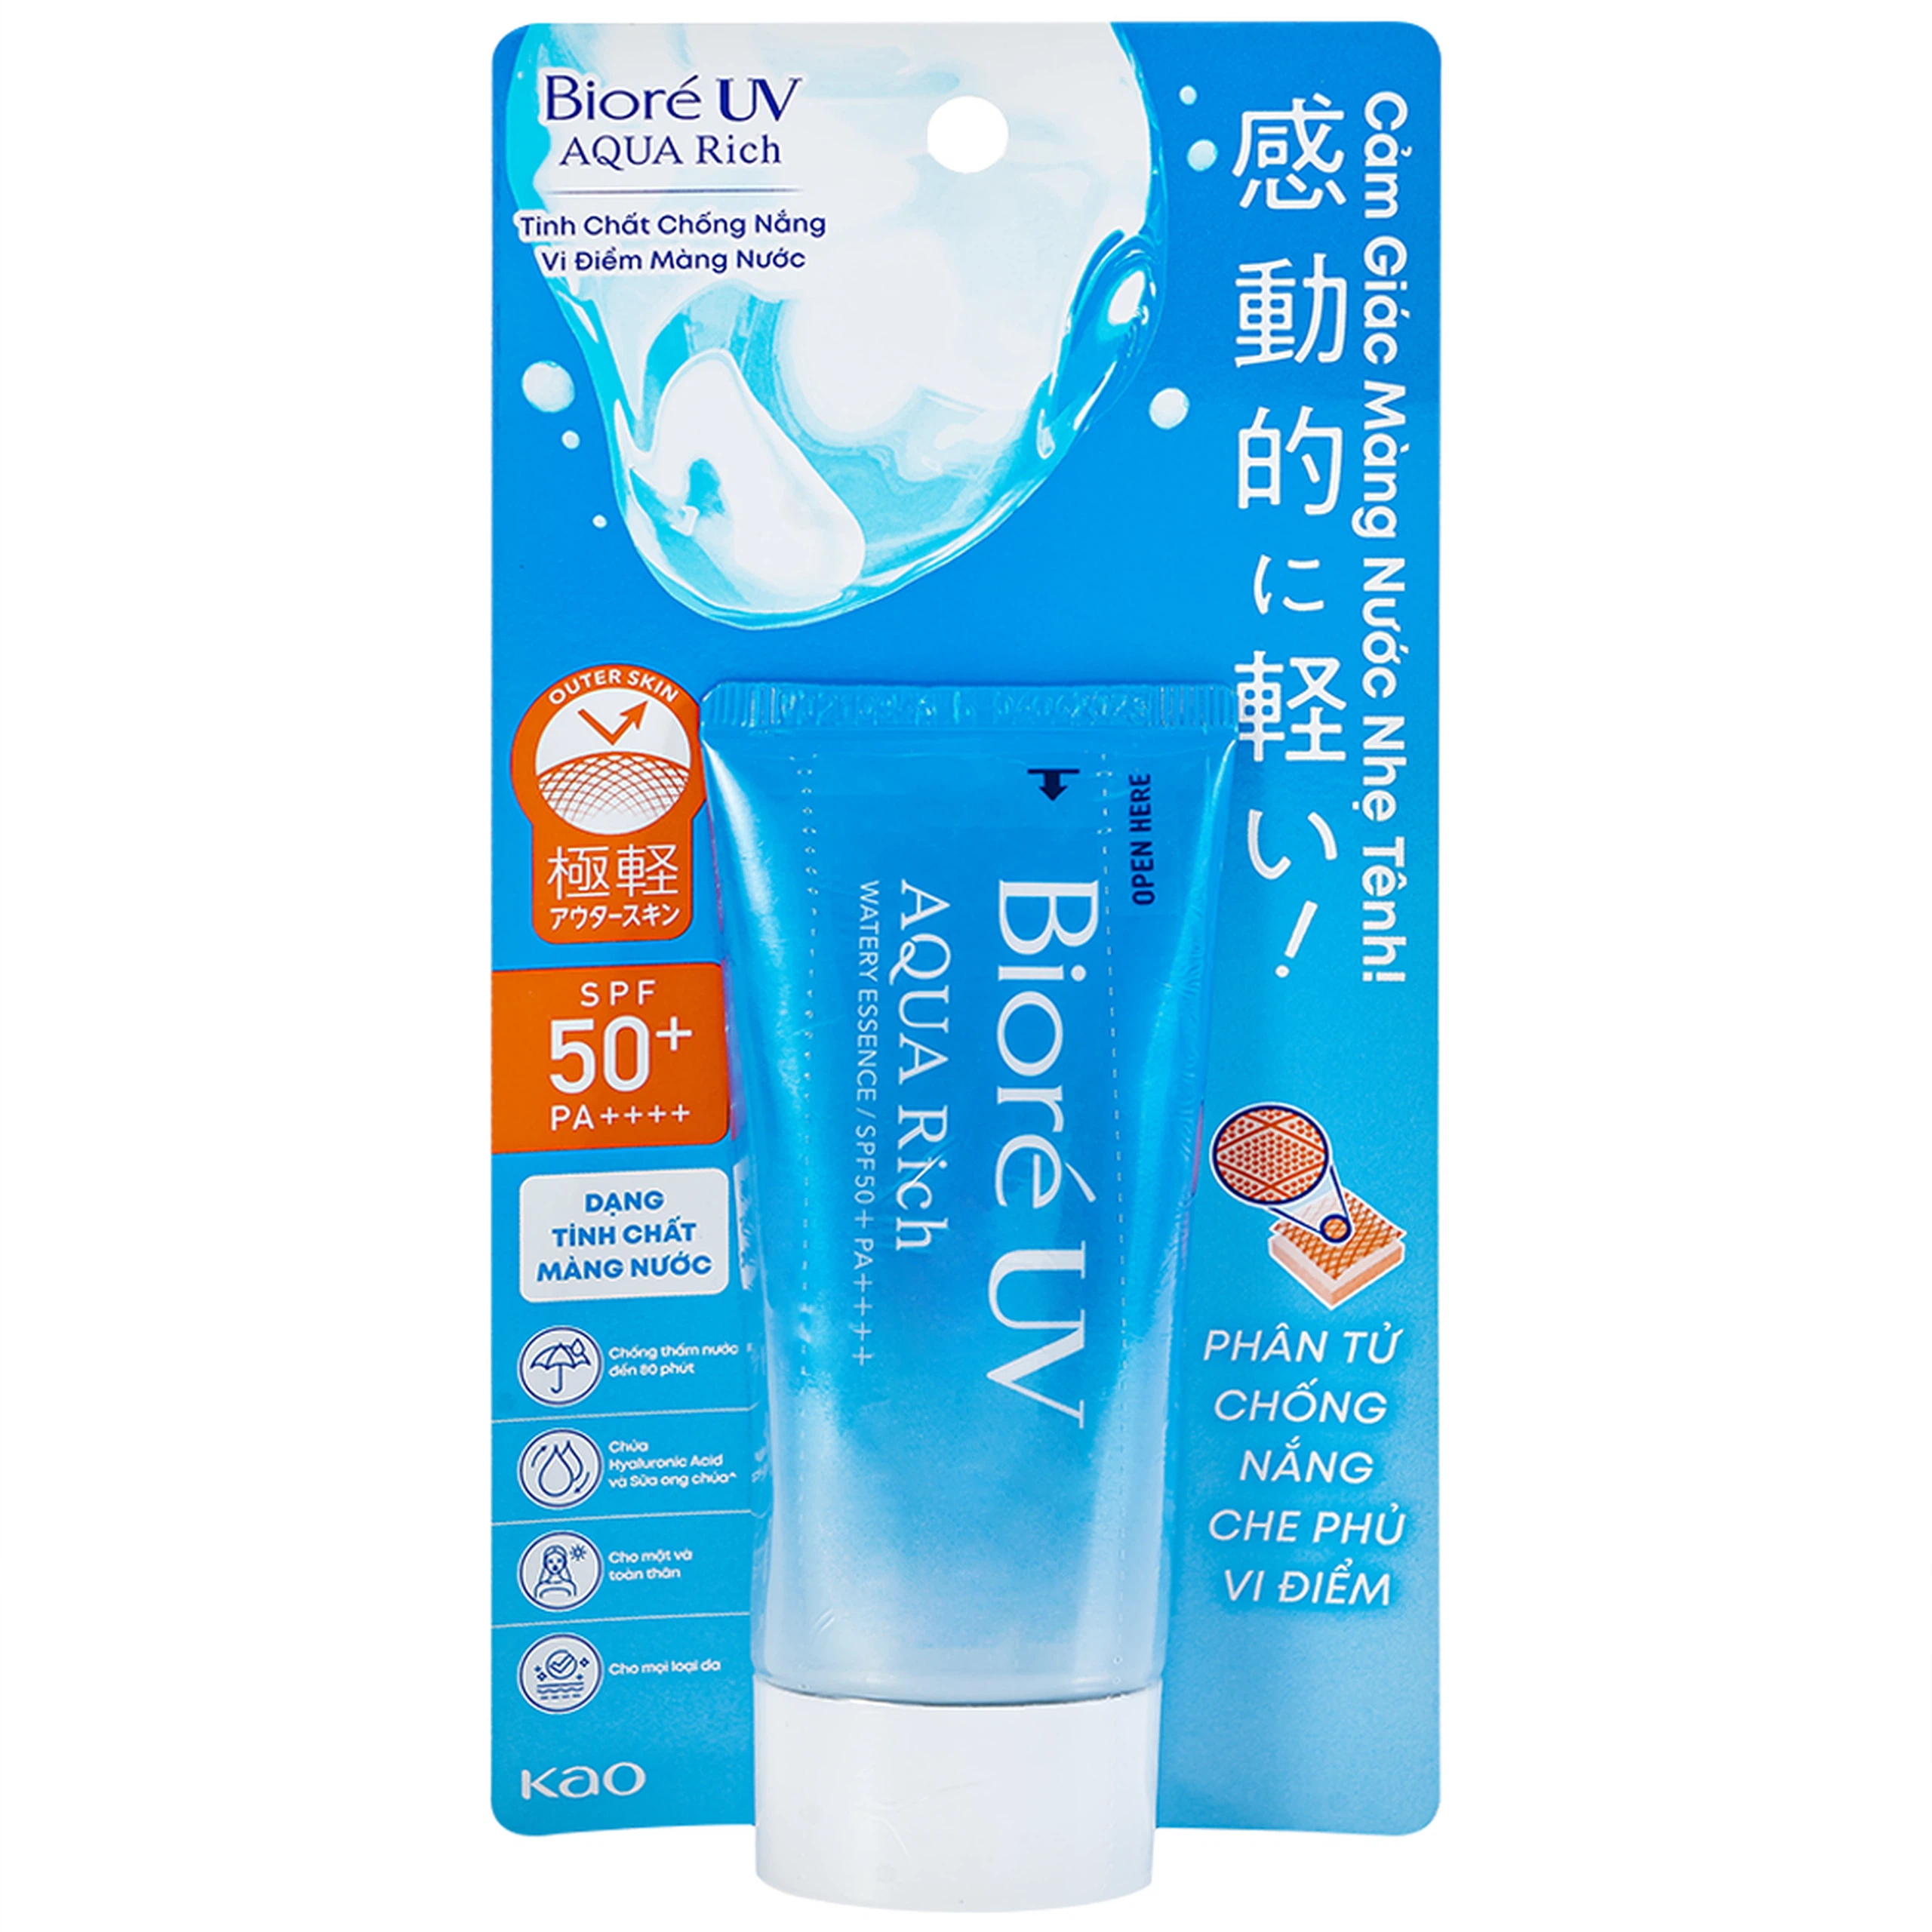 Tinh chất chống nắng vi điểm màng nước Bioré UV Aqua Rich SPF50+ PA++++ dưỡng ẩm cho mặt, cổ, vai (50g)